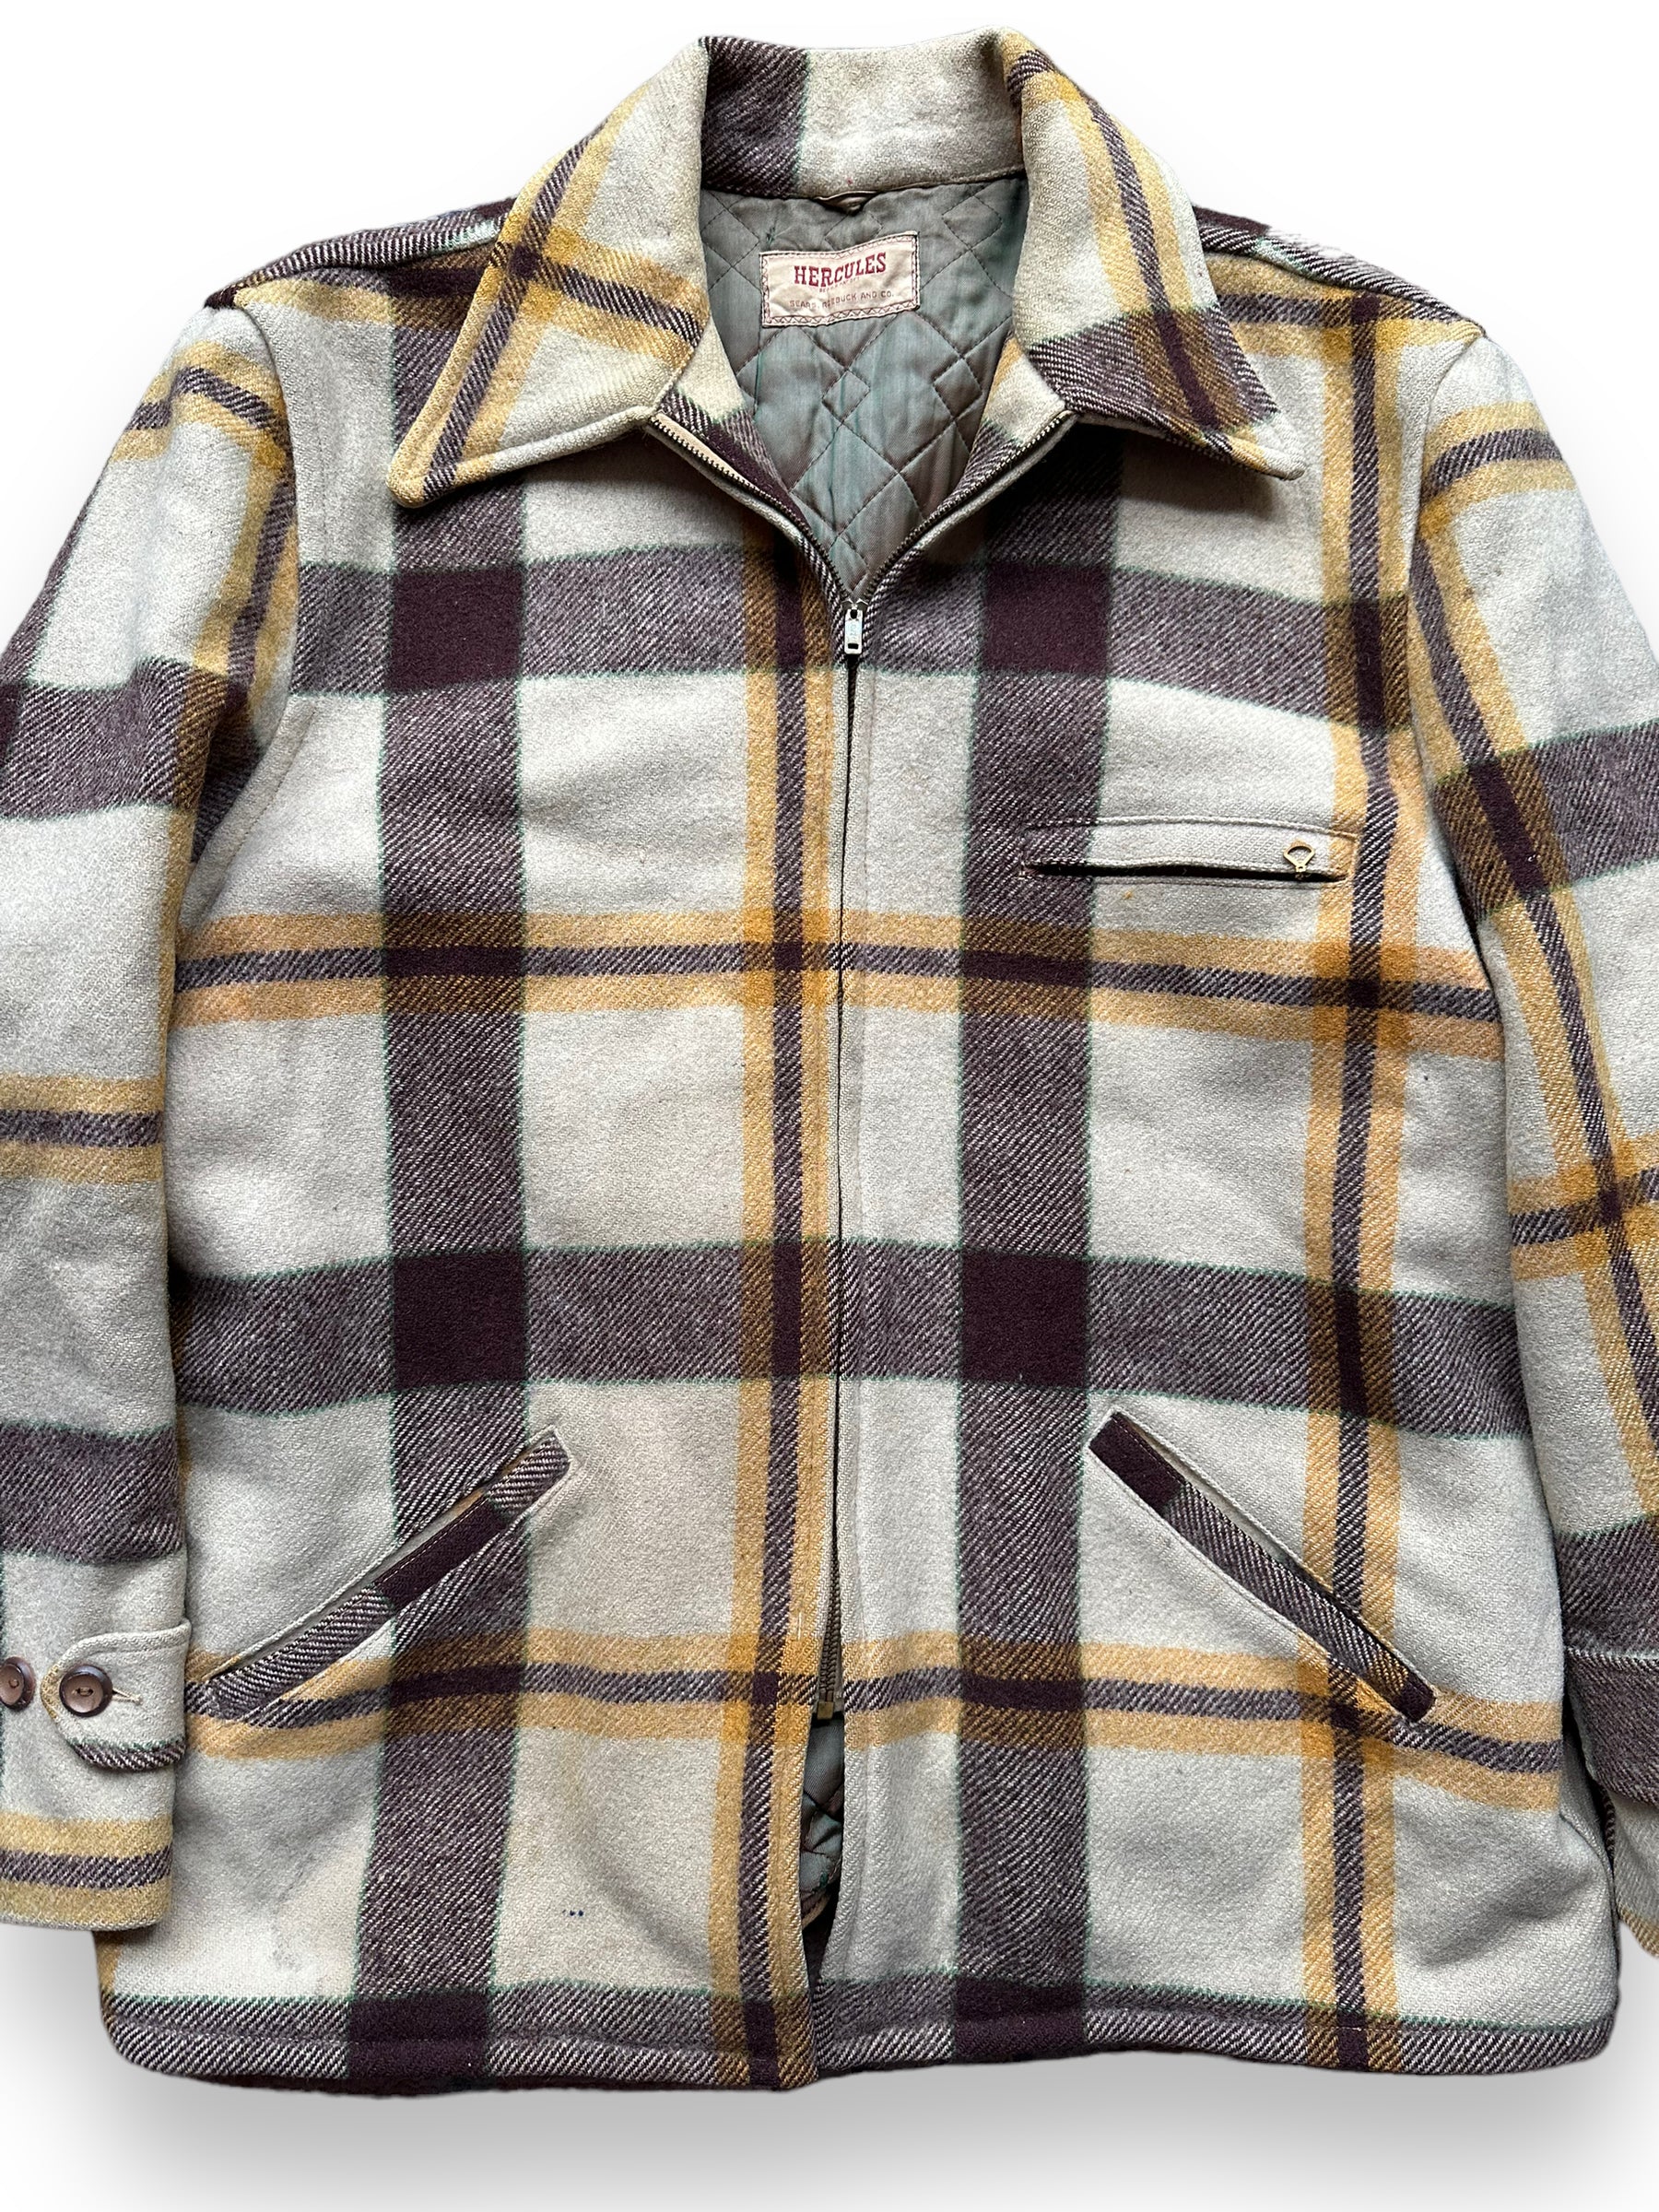 Front Detail on Vintage Hercules Wool Jacket SZ XL |  Barn Owl Vintage Goods | Vintage Sears Wool Coat Seattle